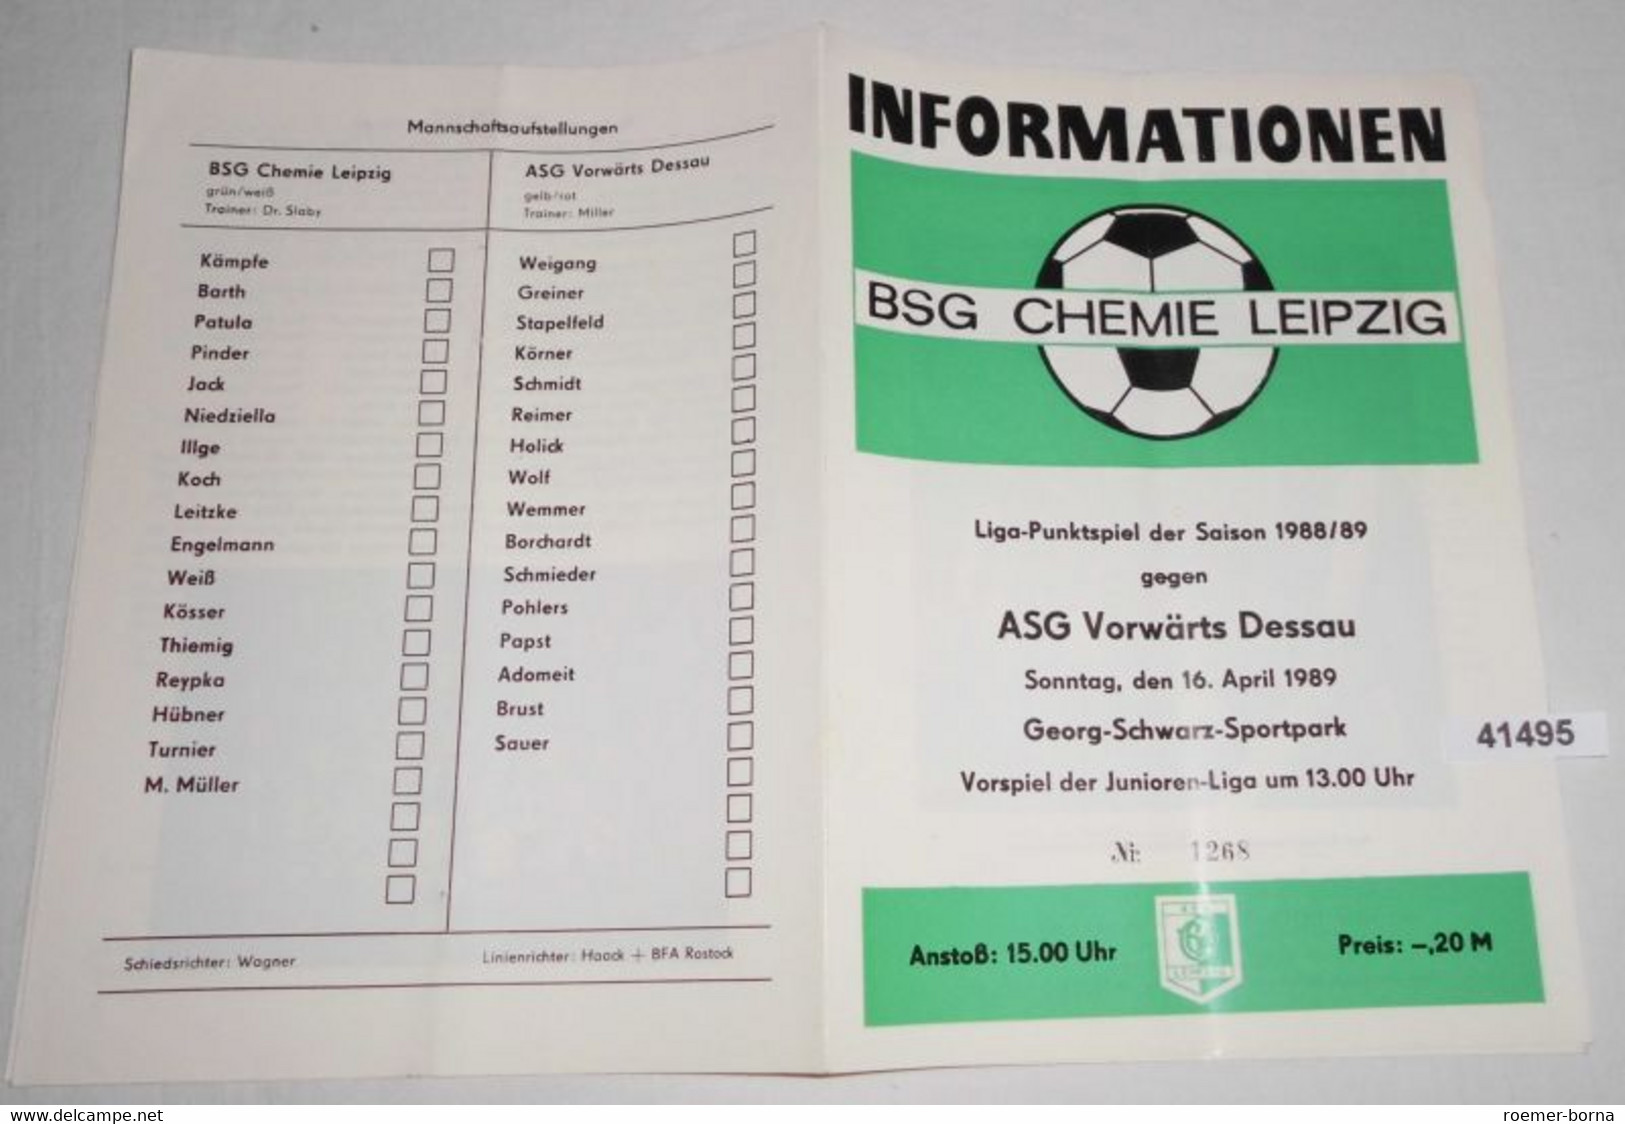 Informationen Nr. 1268 Liga-Punktspiel Der Saison 1988/89 BSG Chemie Leipzig Gegen ASG Vorwärts Dessau - Sport